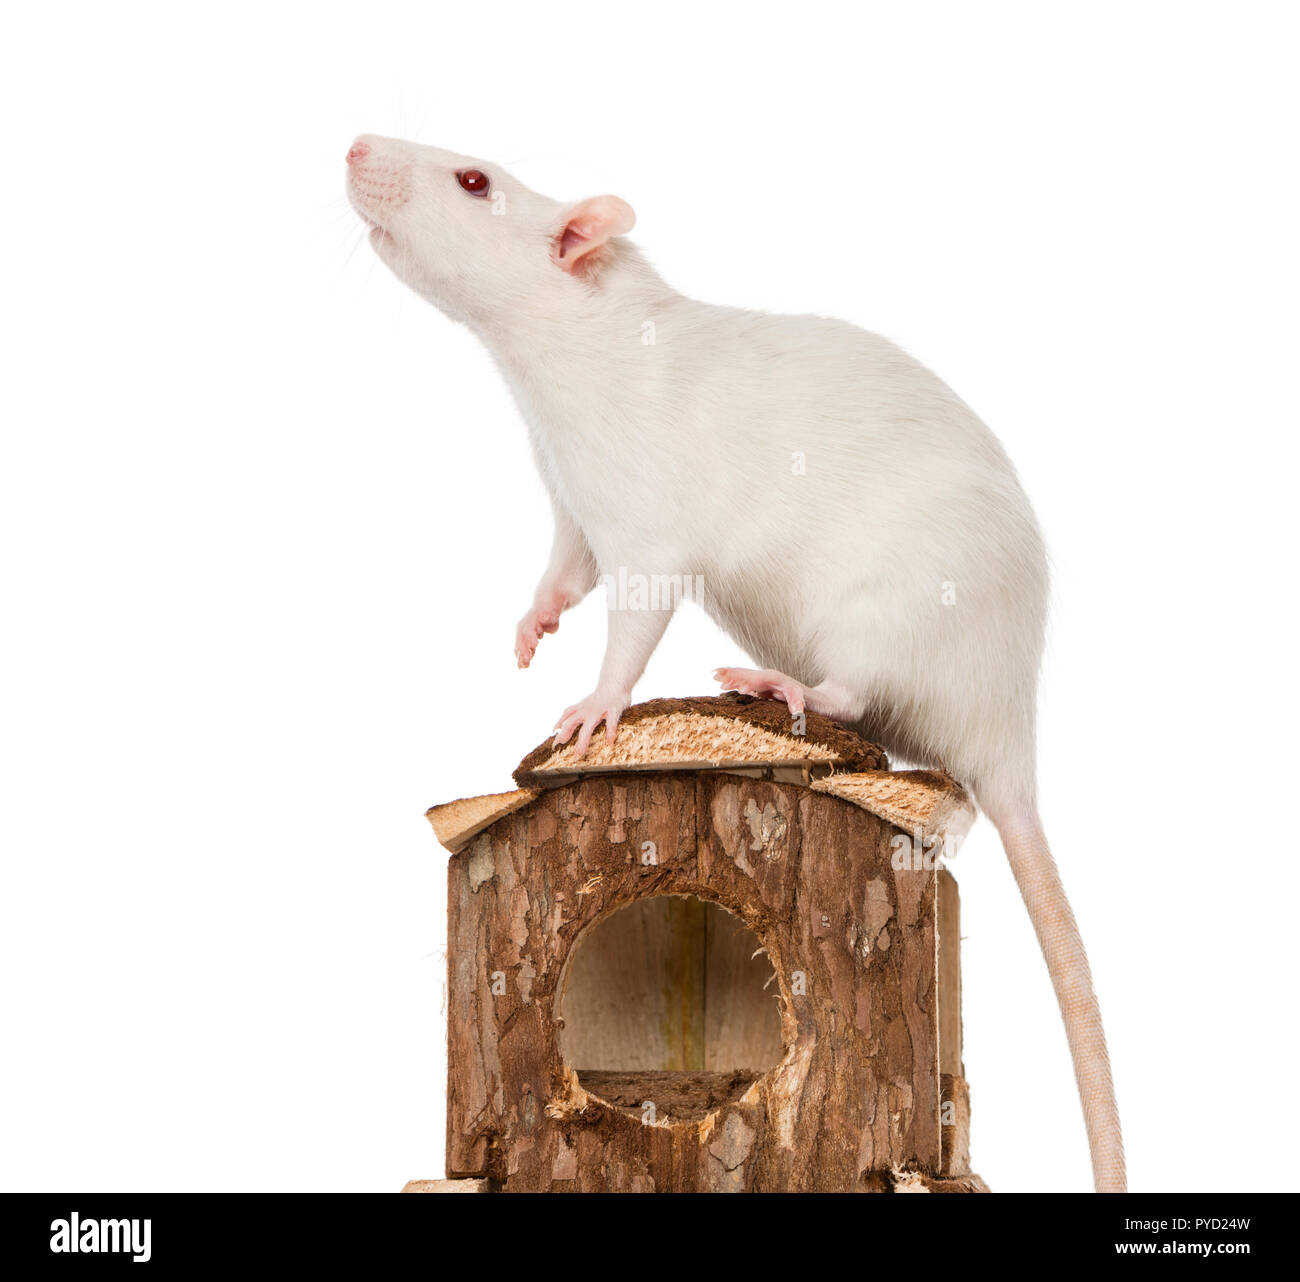 Di ratto (8 mesi) in piedi su un mouse house Foto Stock